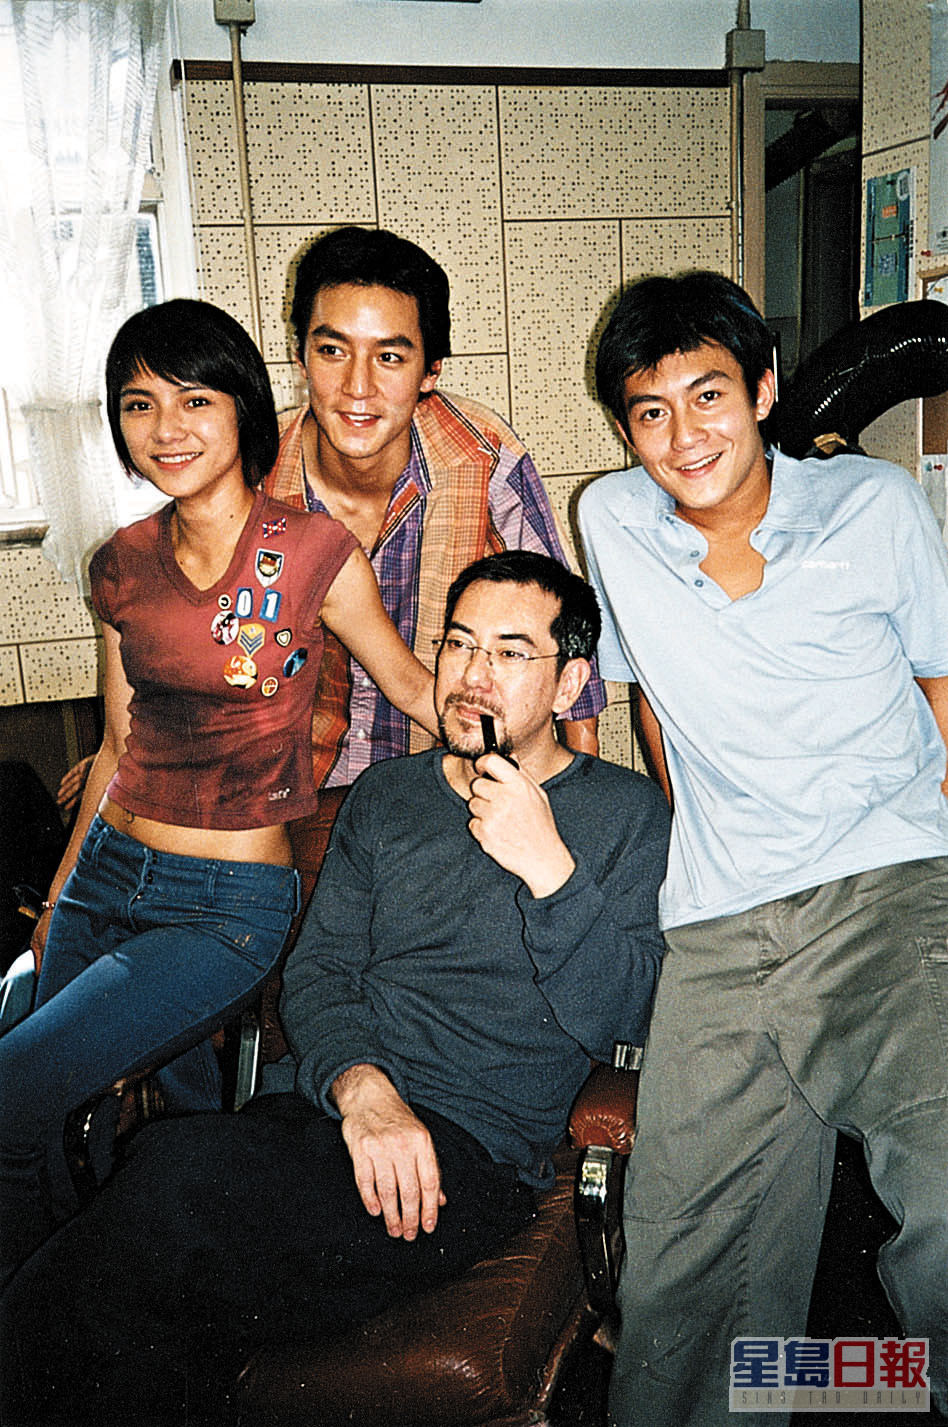 吳彥祖與陳冠希2002年合作張艾嘉電影《想飛》，當時正值兩大男神的全盛時期。